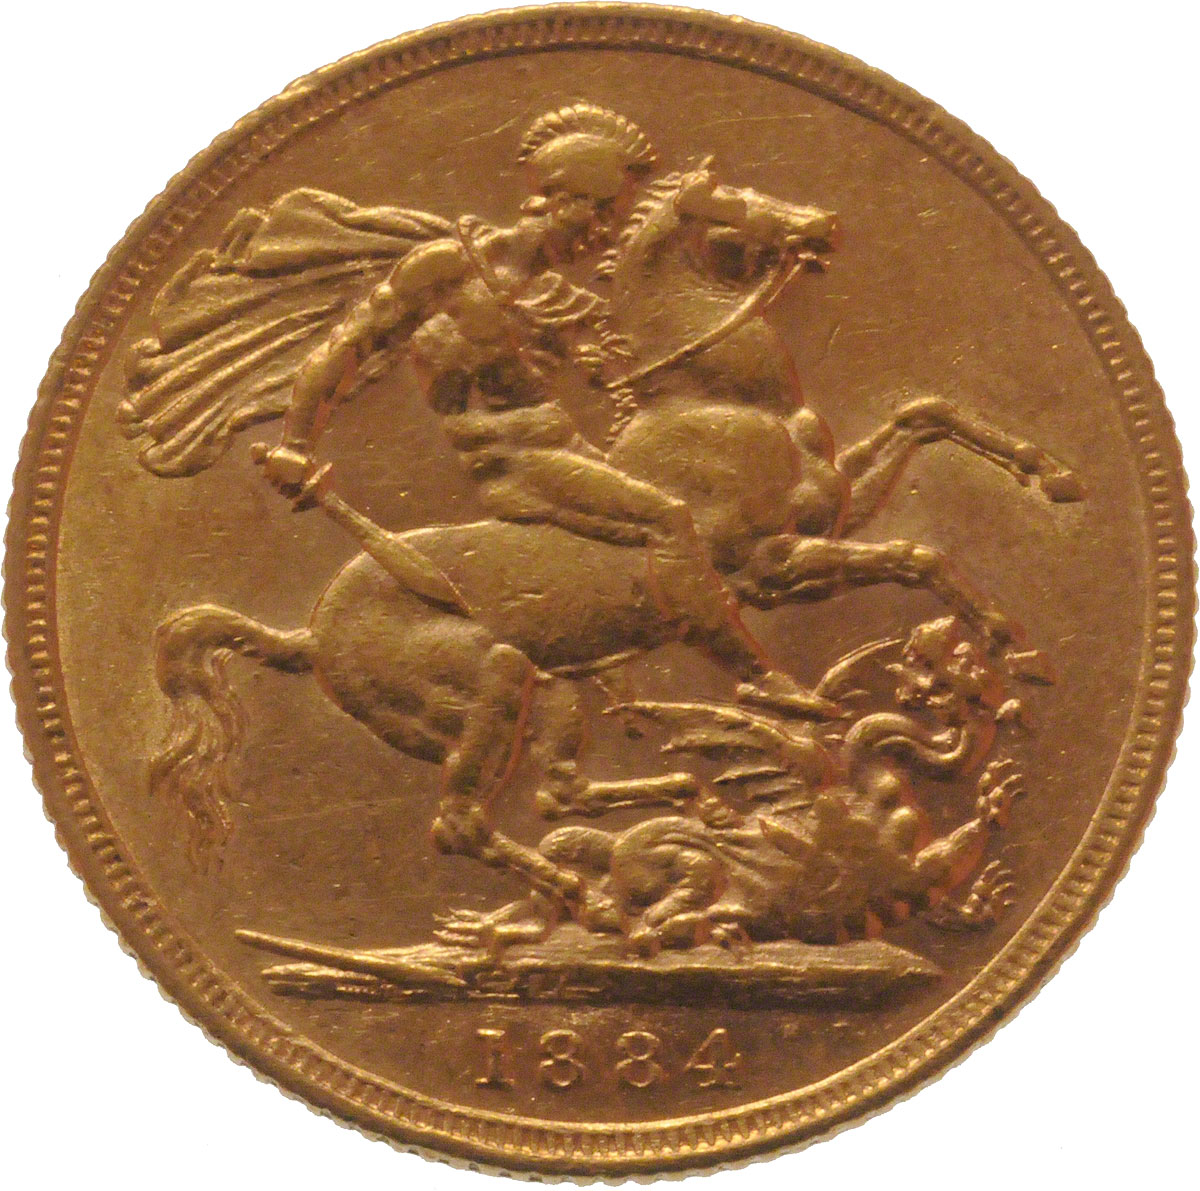 1884 Βικτώρια (Νομισματοκοπείο Σίδνεϊ)